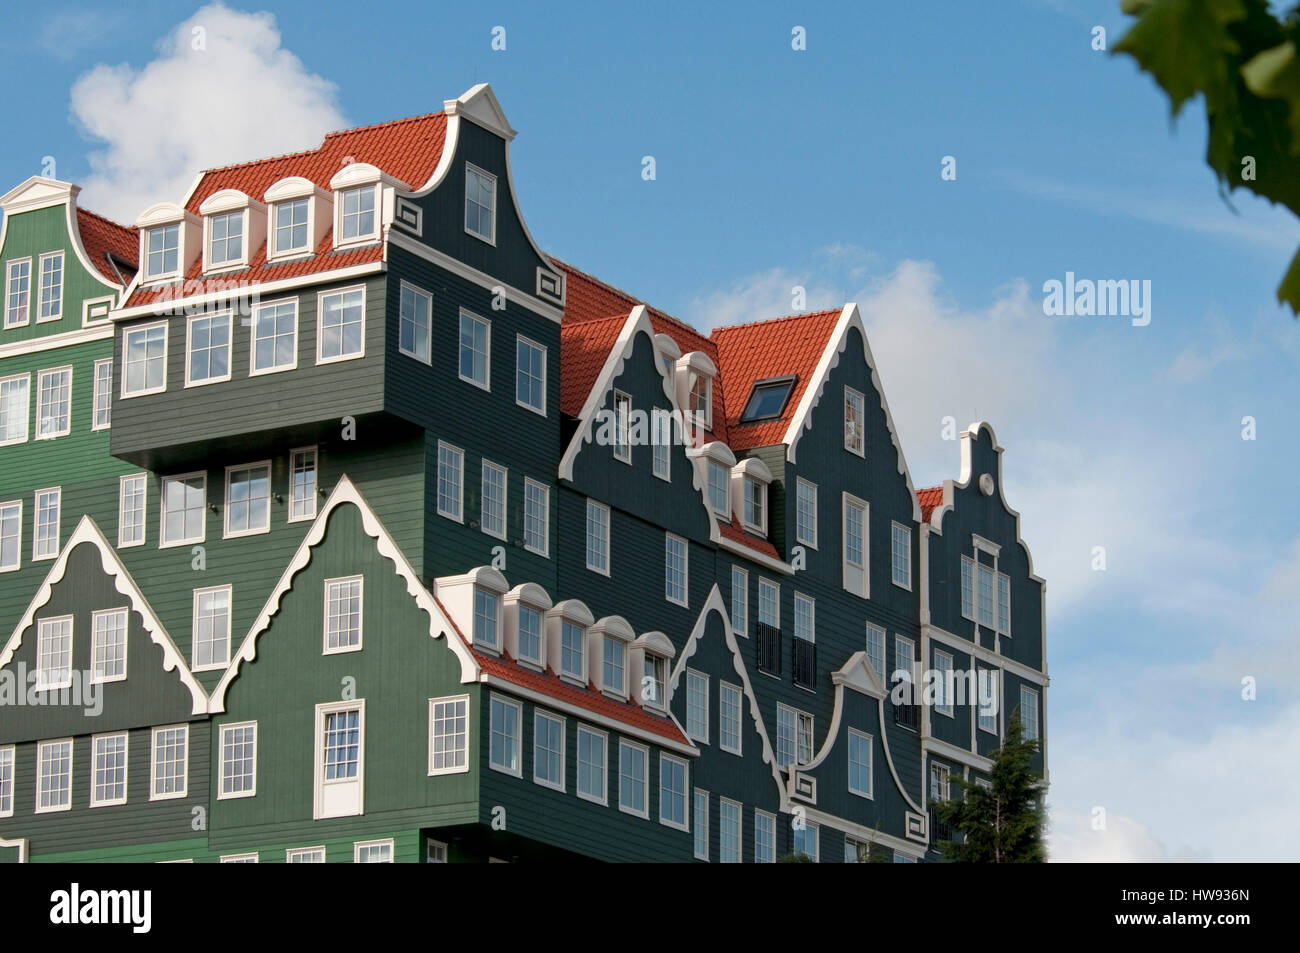 Eine Mischung aus modernen und traditionellen niederländischen Architektur. Die berühmten typischen holländischen Häuser übereinander, ein Gebäude zu bilden. Stockfoto